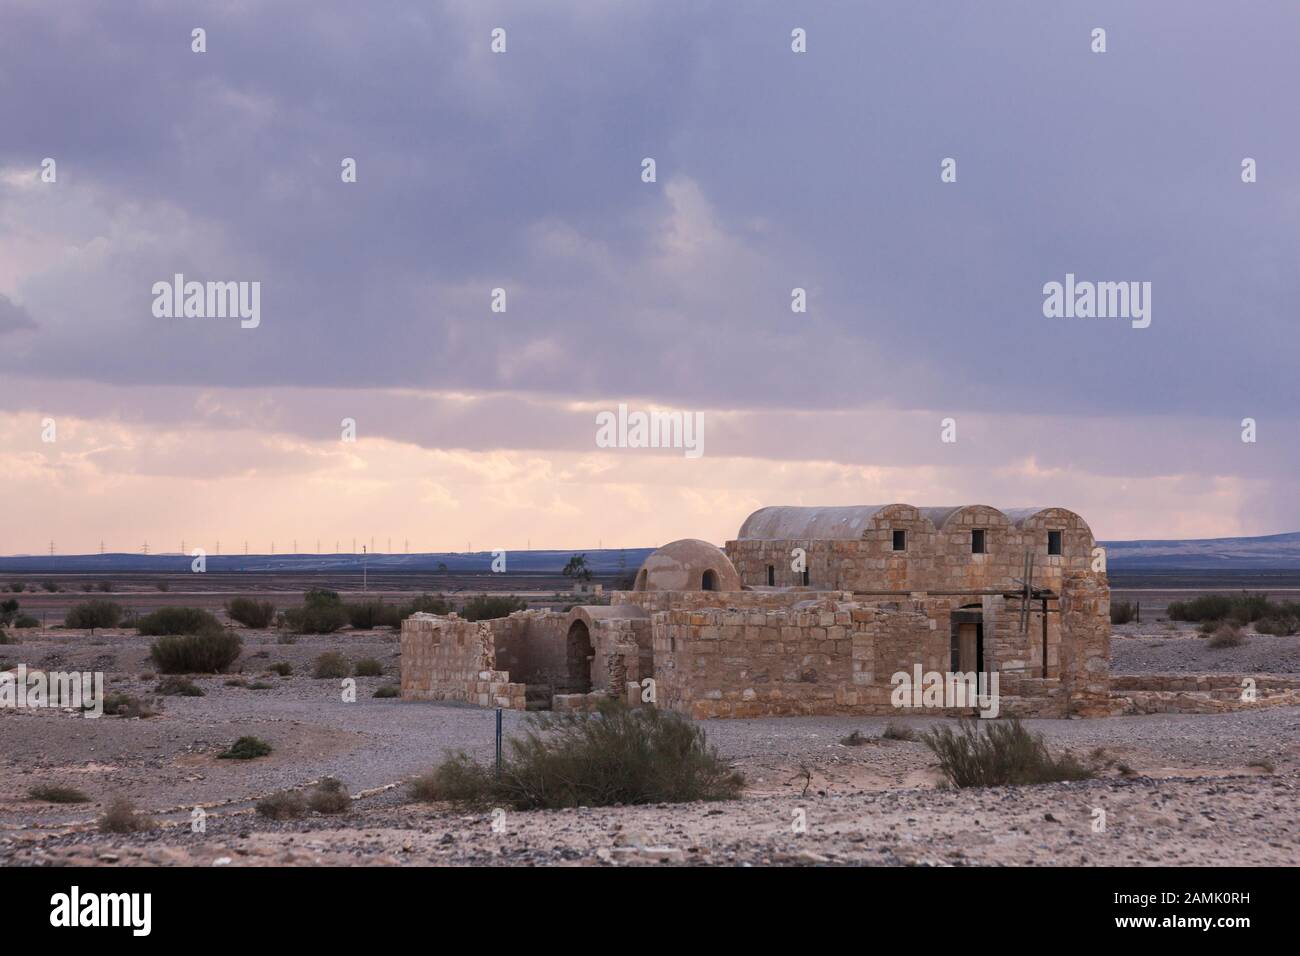 Qasr Amra, Qusayr amra, Desrt castle, Zarqa, eastern desert, Jordan, middle east, Asia Stock Photo